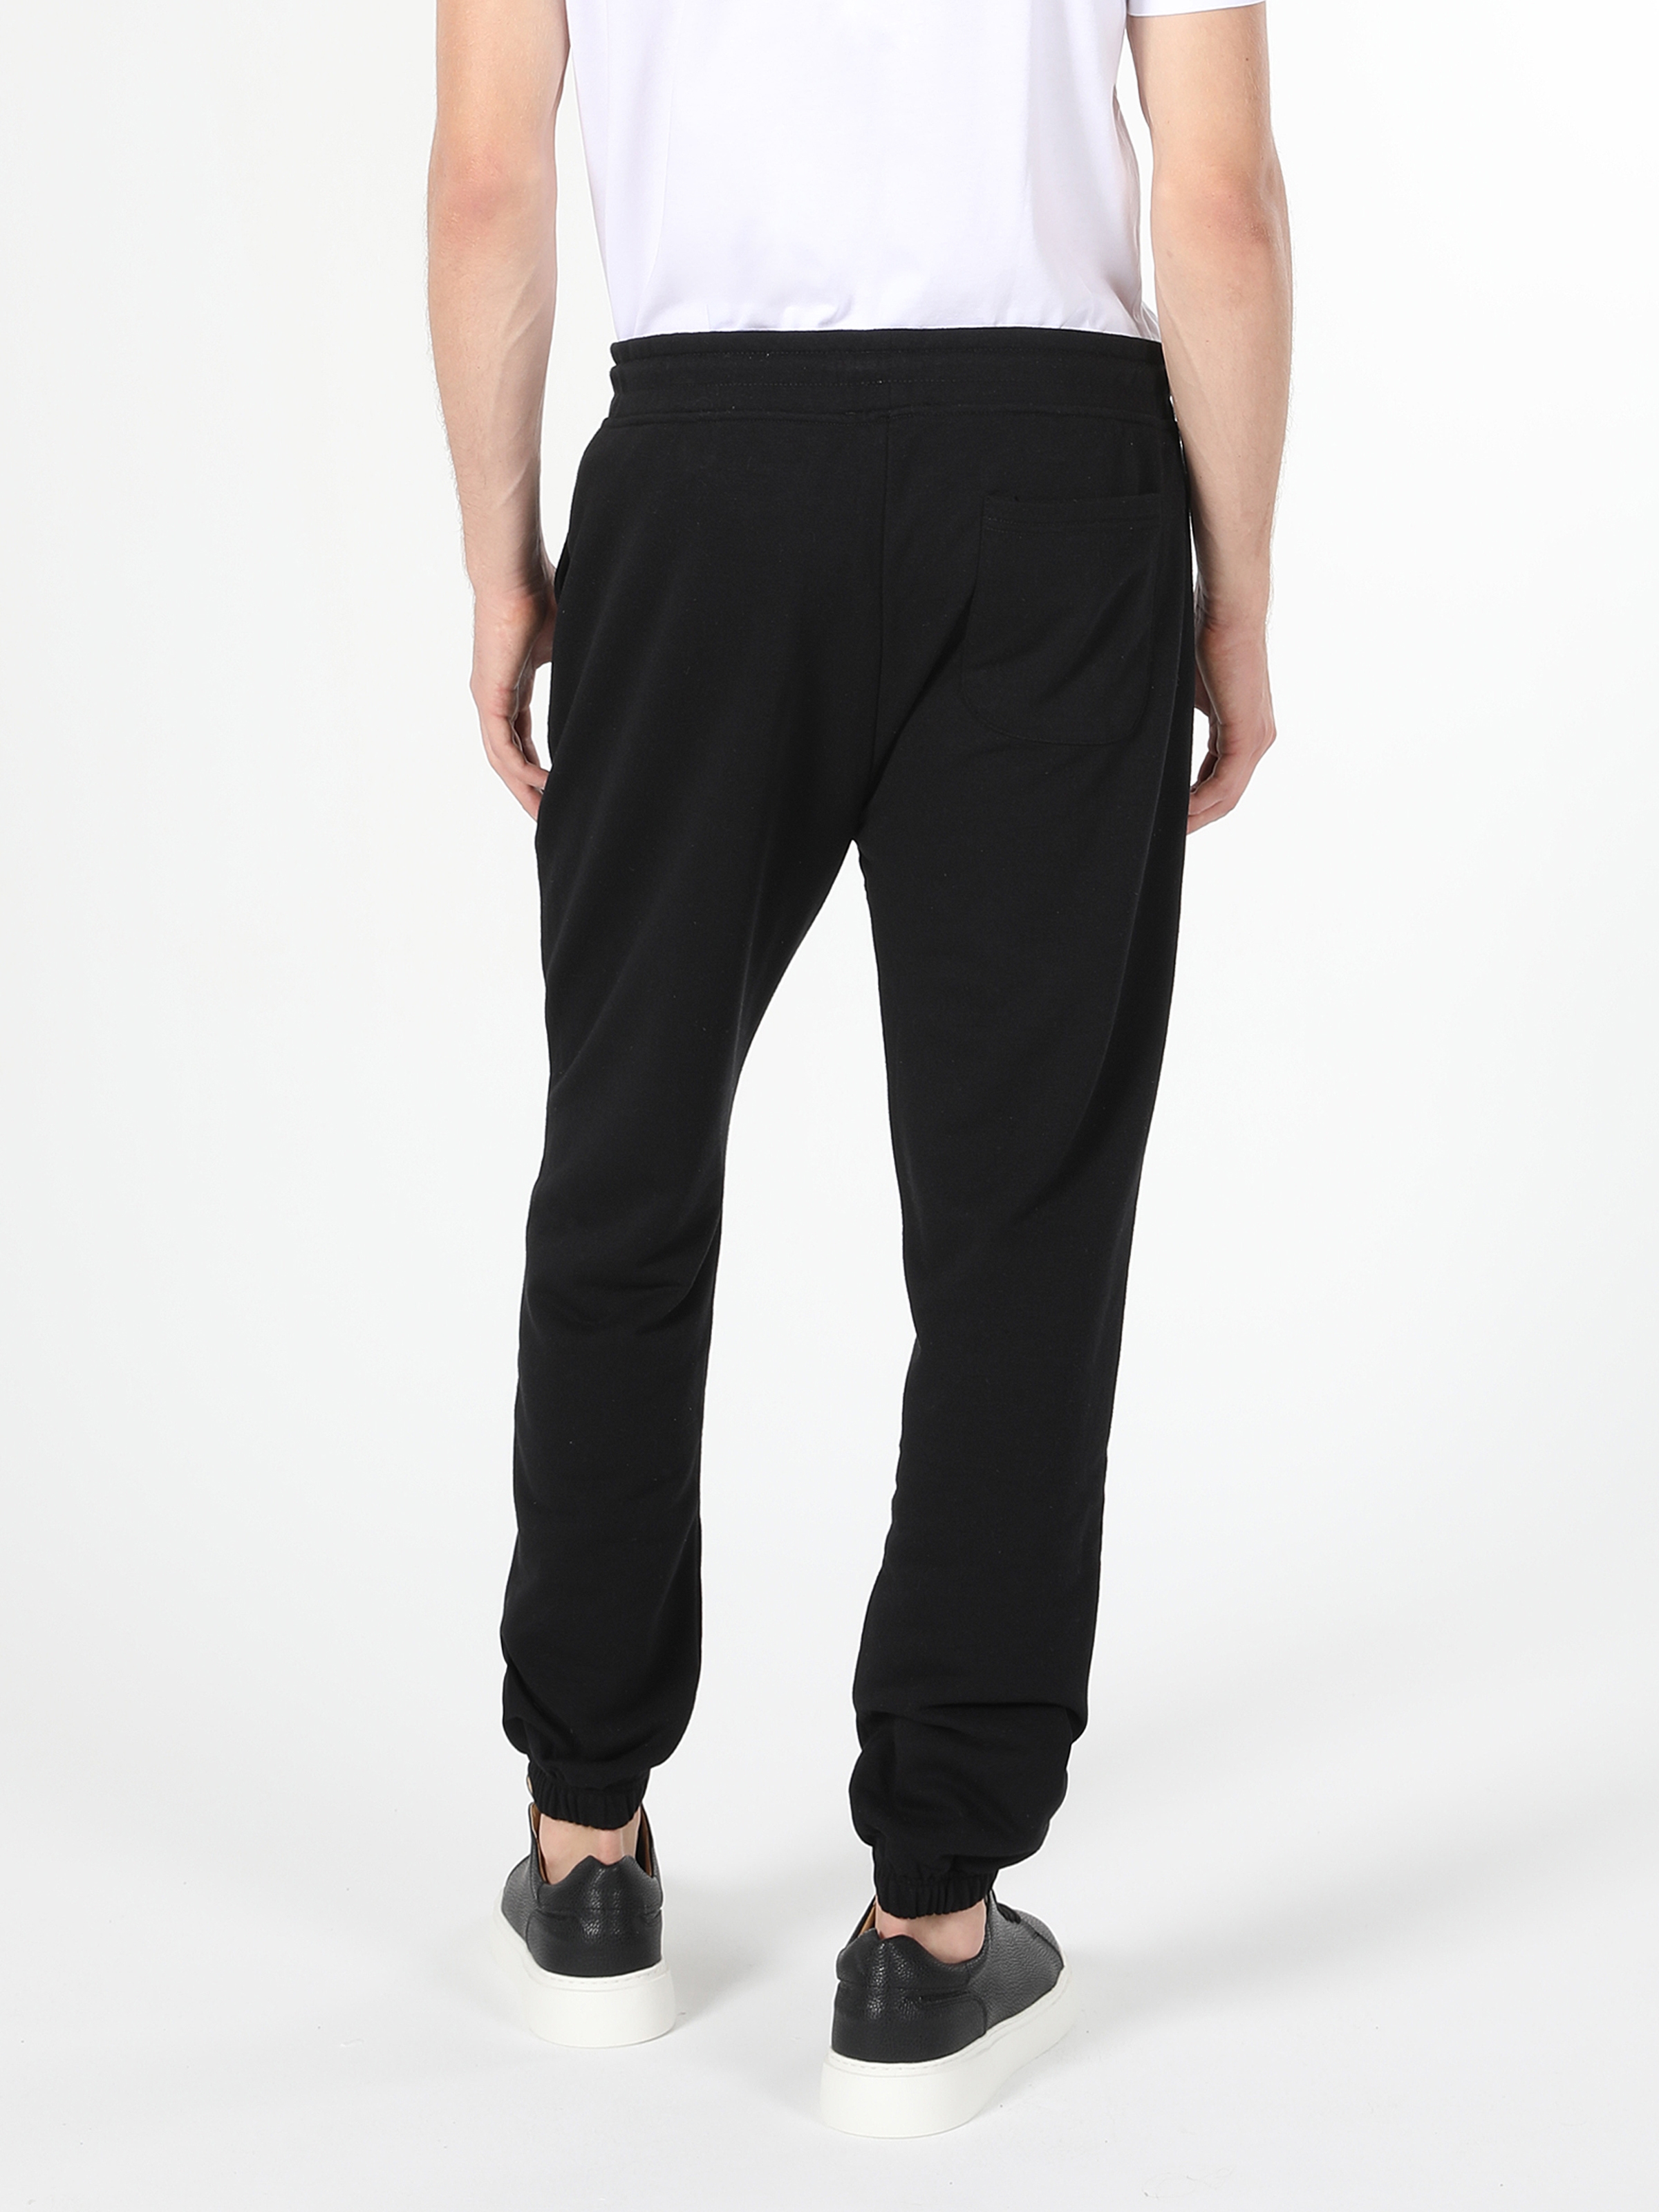 Afficher les détails de Pantalon De Survêtement Noir Multi Poches Coupe Régulière Pour Homme 